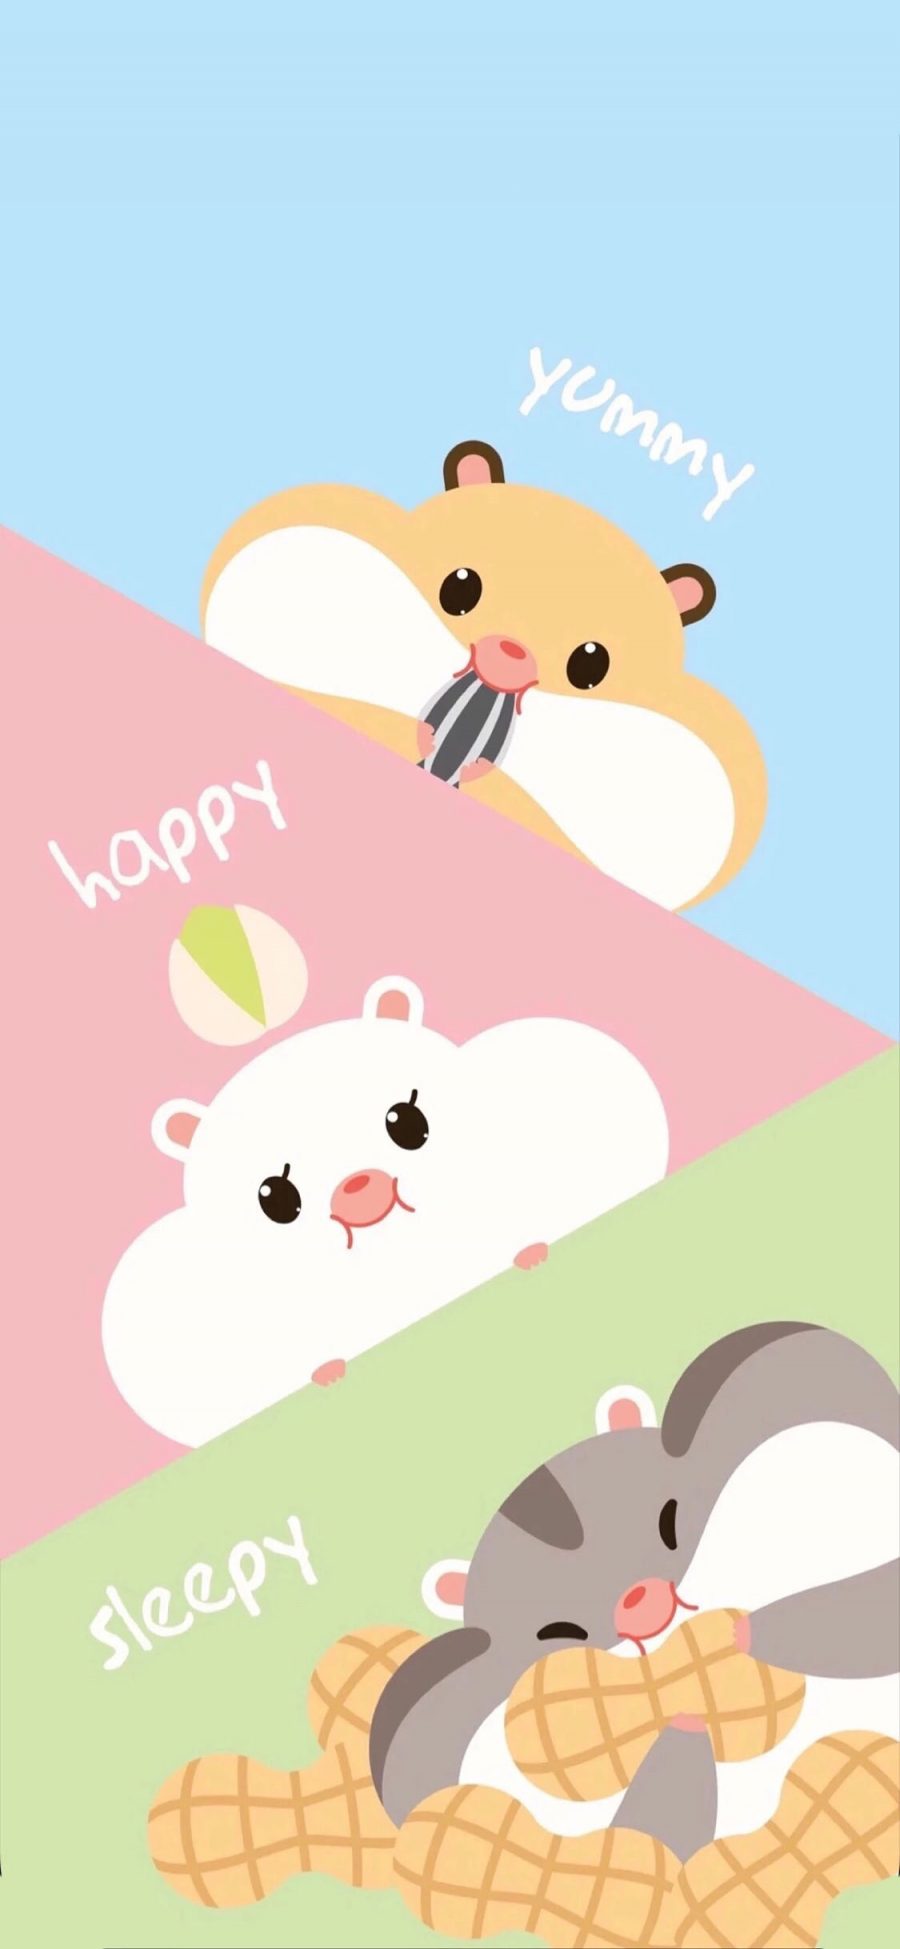 [2436×1125]可爱 卡通 仓鼠 松鼠 happy yummy 苹果手机动漫壁纸图片